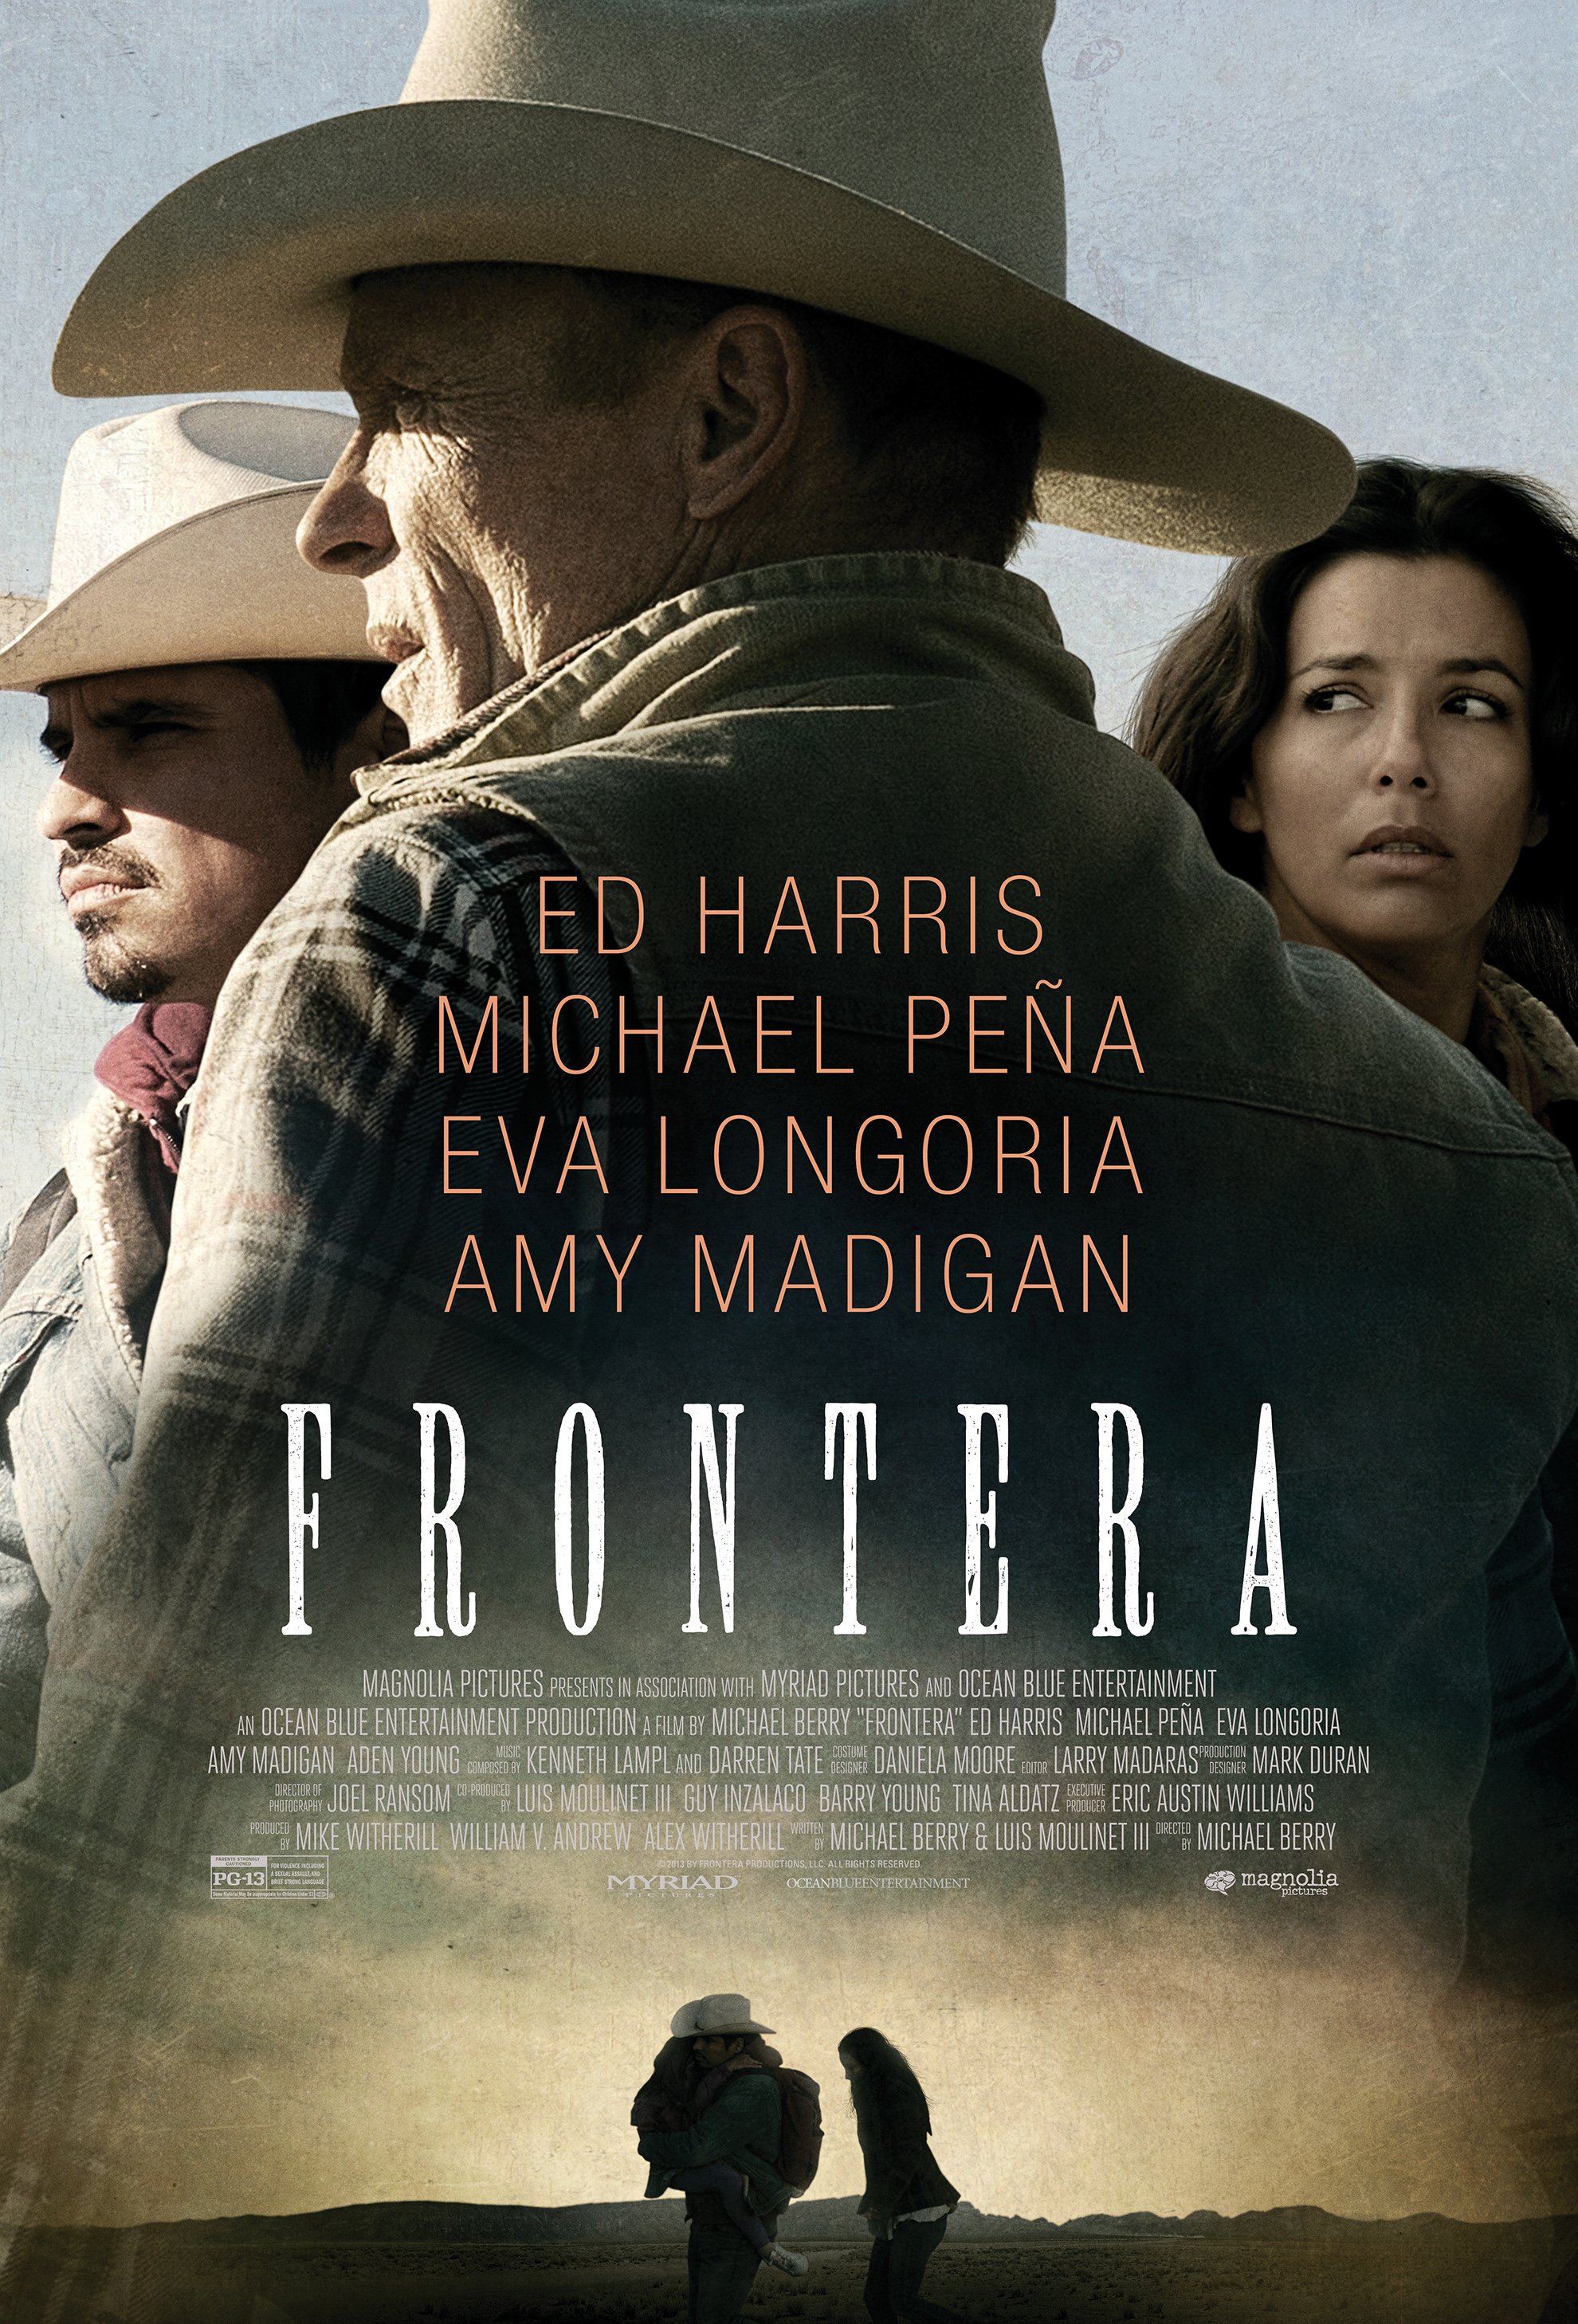 Eva Longoria in Frontera (2014)